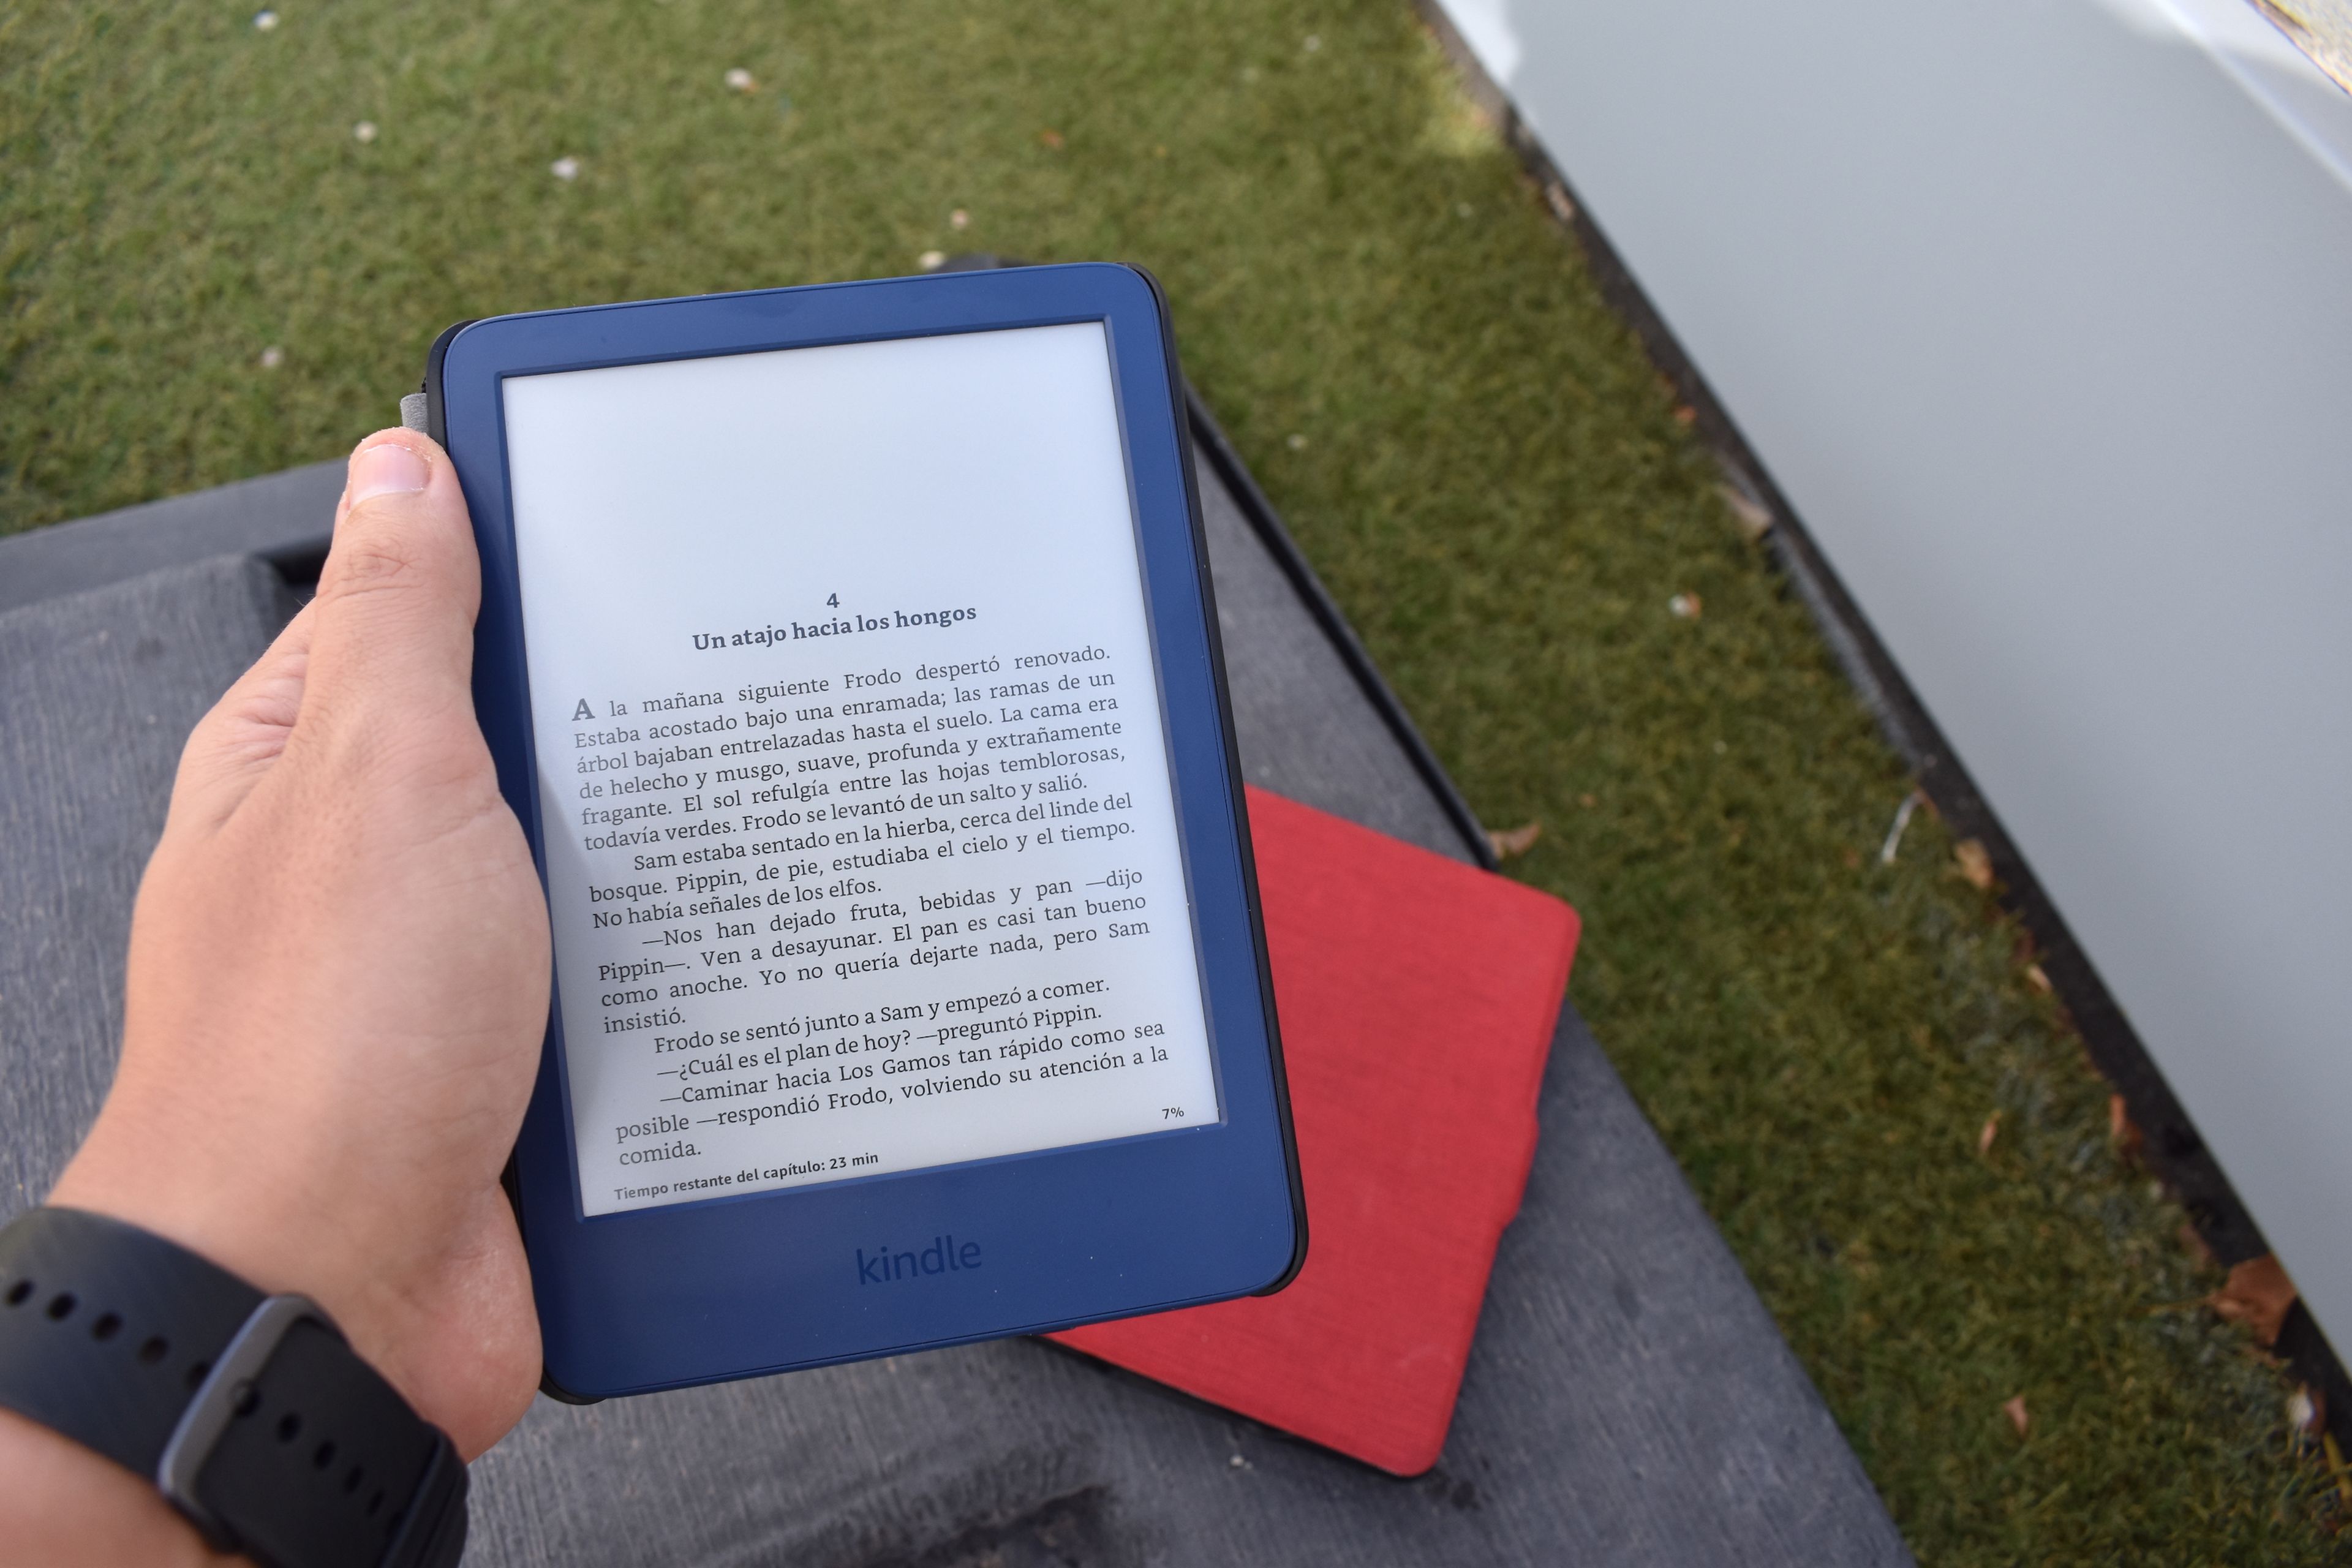 Kindle 2022: opinión, análisis y características